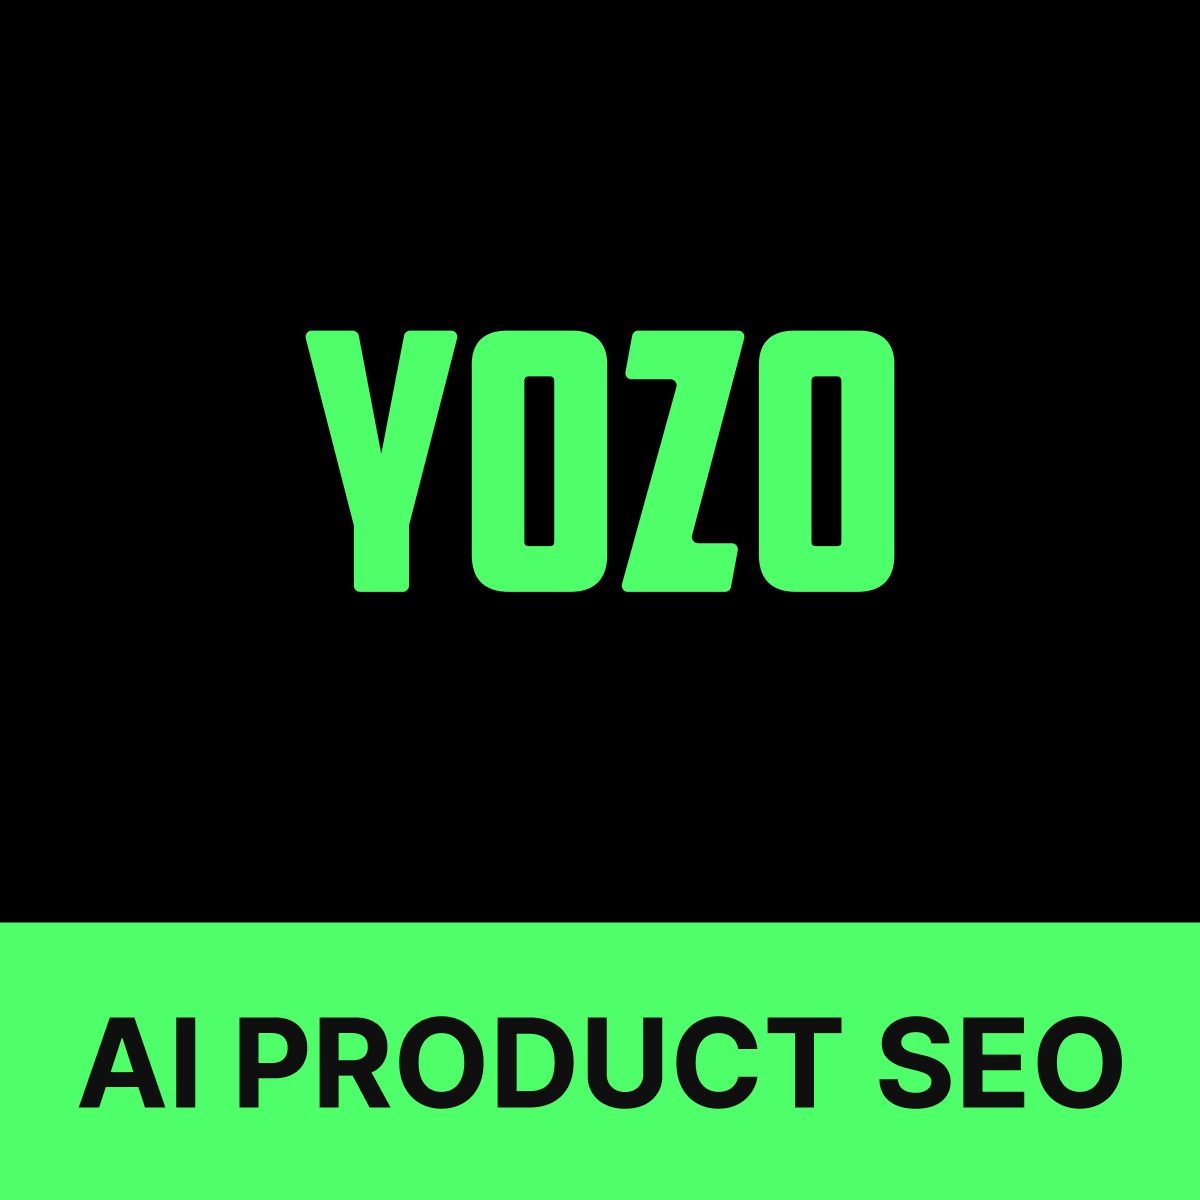 Yozo AI Product Descriptions